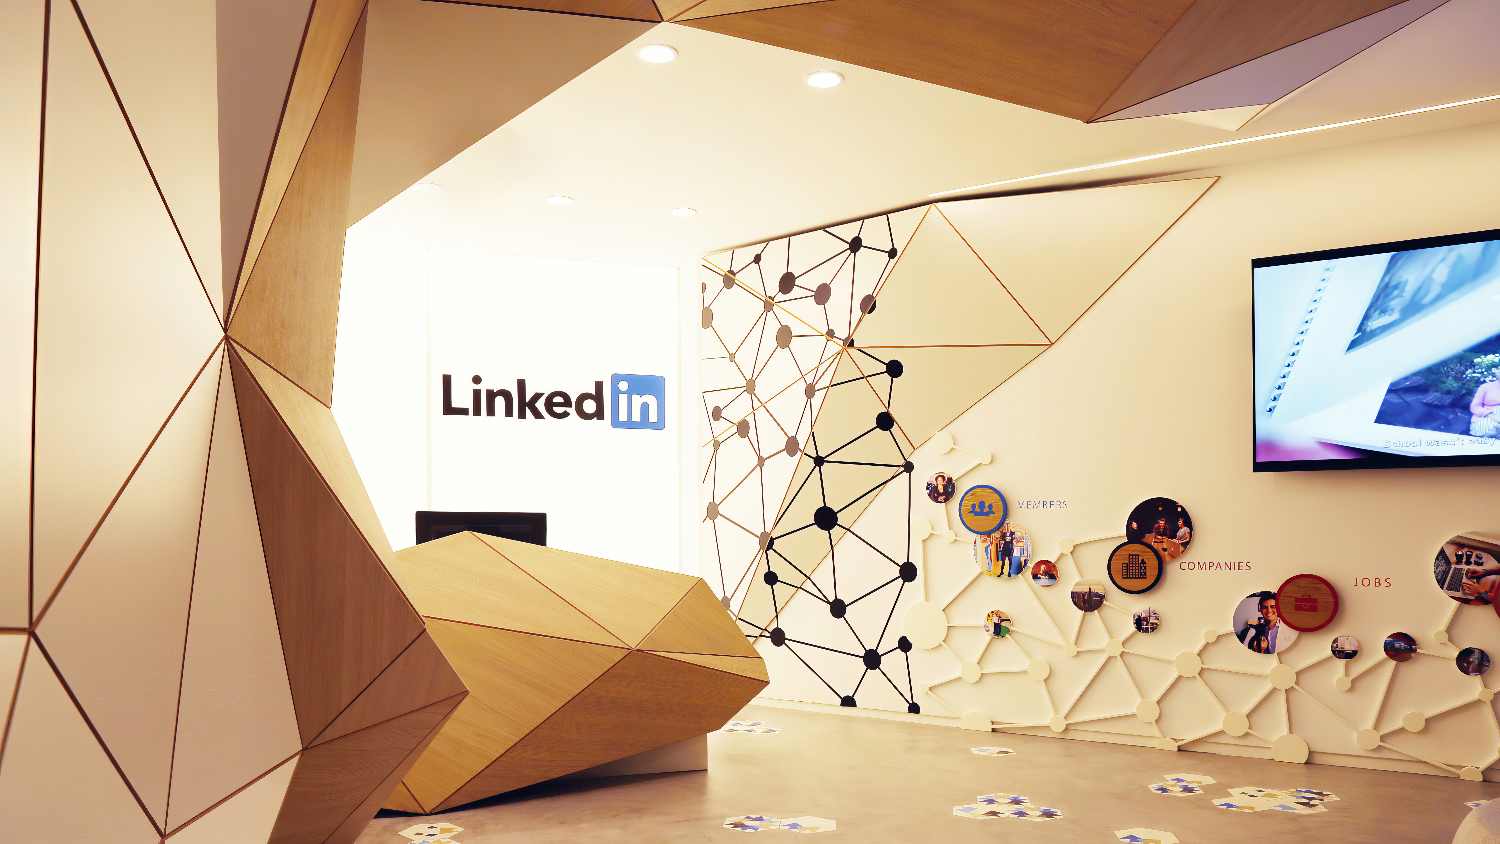 Le guide pour réussir le Social Selling sur LinkedIn et booster votre activité B2B